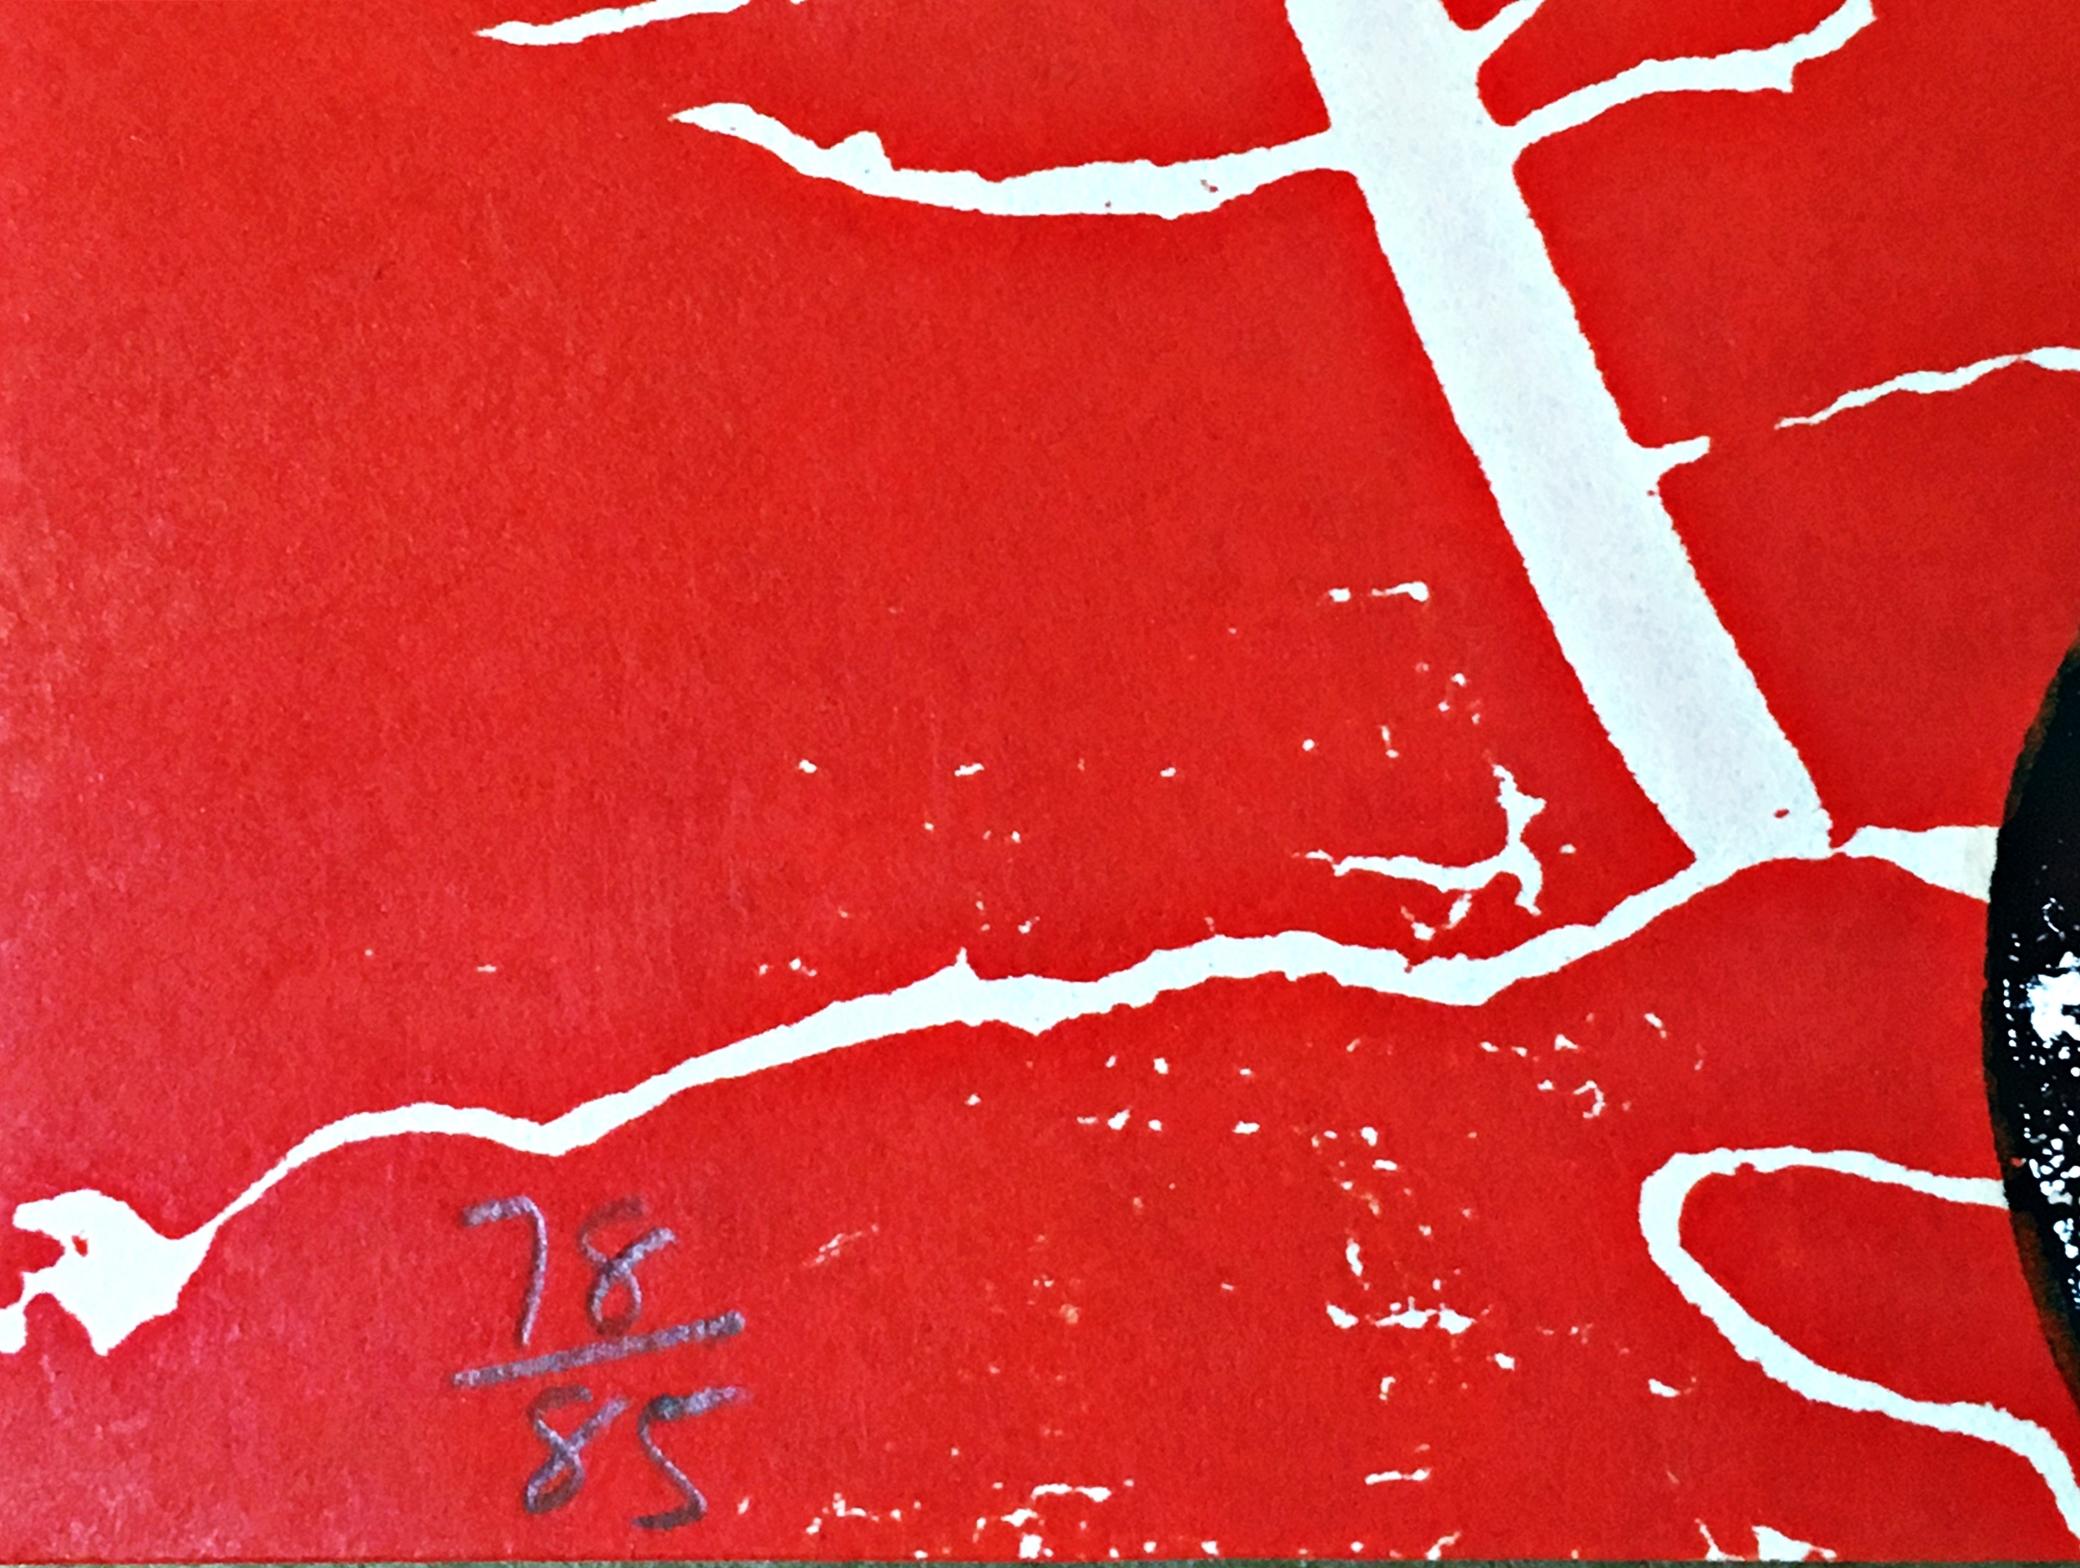 Judy Pfaff
Kürbis, 1985
Holzschnitt auf Velin
Signiert, nummeriert 78/85, datiert und betitelt auf der Vorderseite mit Blindstempeln des Künstlers und des Verlags.
21 3/4 × 29 3/4 Zoll
Herausgeber
Center for Editions, SUNY Purchase, mit